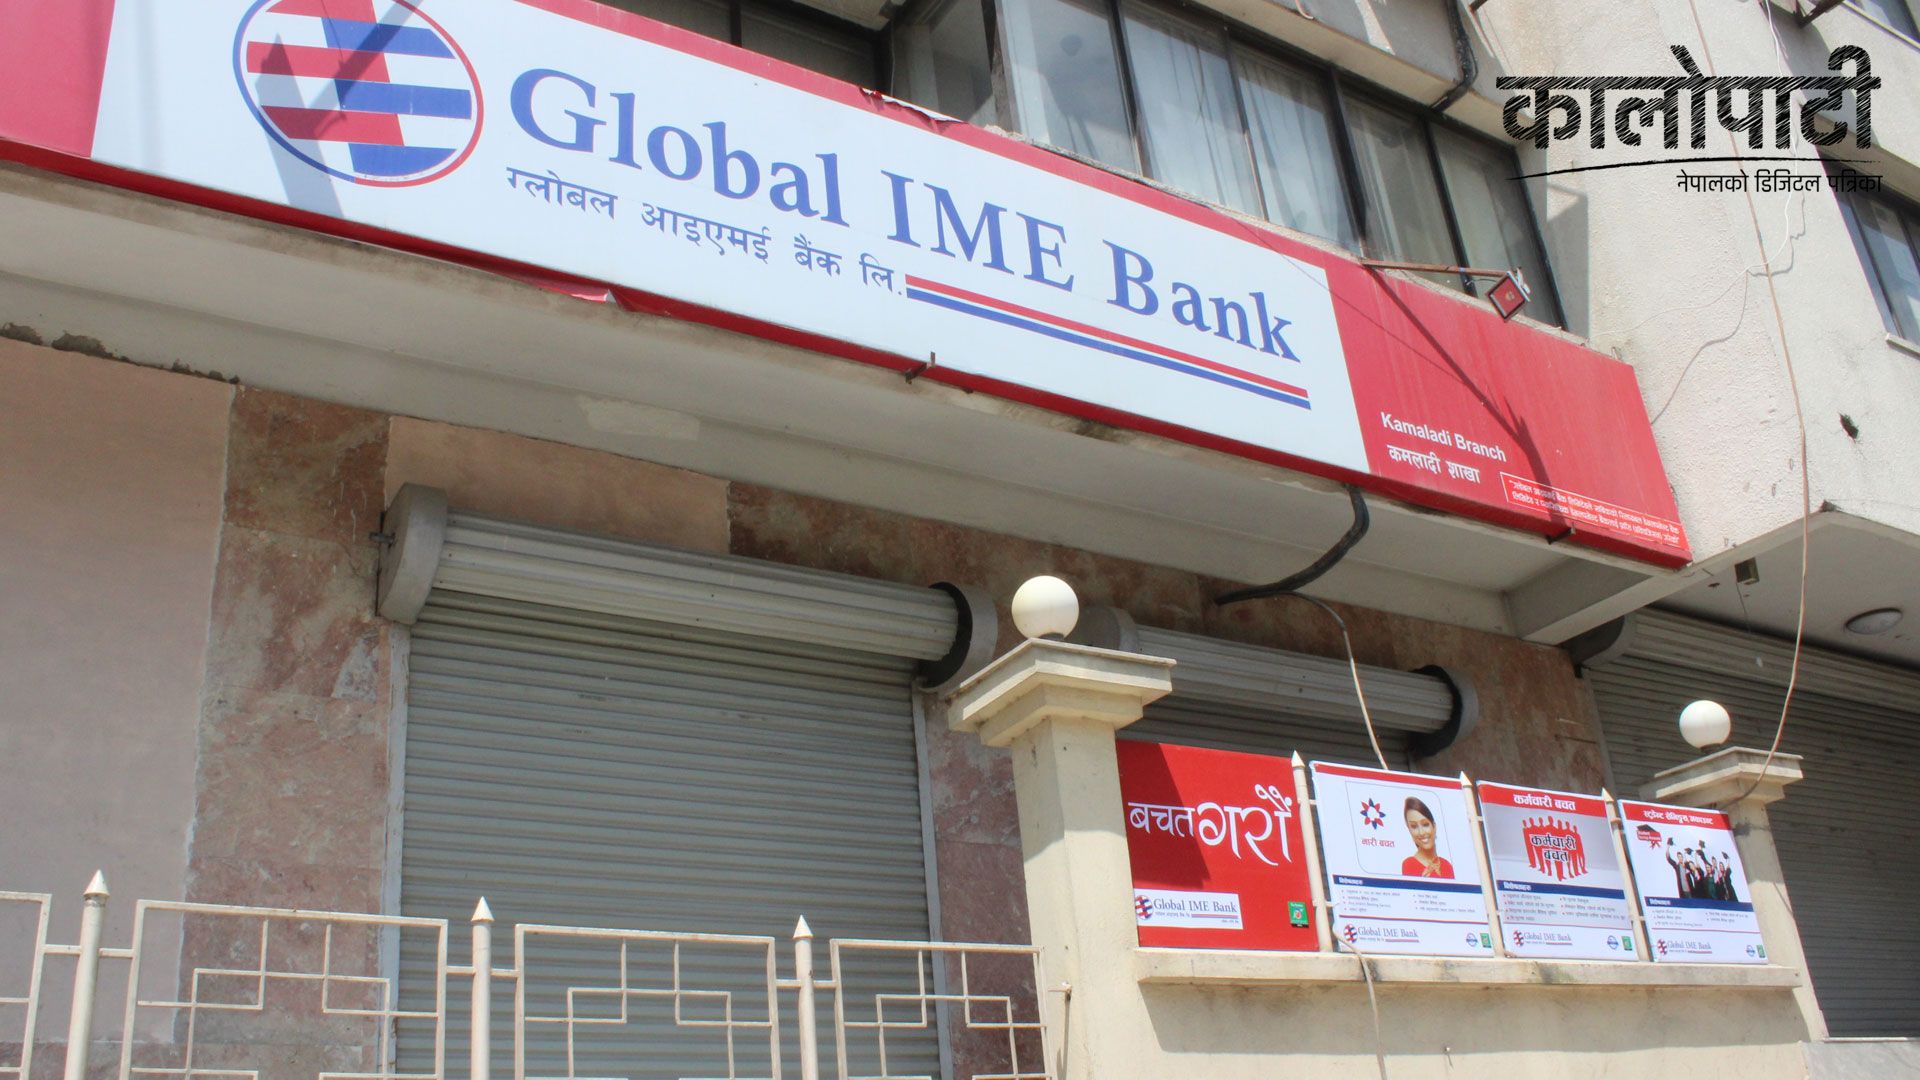 ग्लोबल आइएमई बैंकको मोबाइल एप ‘ग्लोबल स्मार्ट प्लस’ मार्फत नेपाल आइडलमा भोटिङ गर्न सकिने